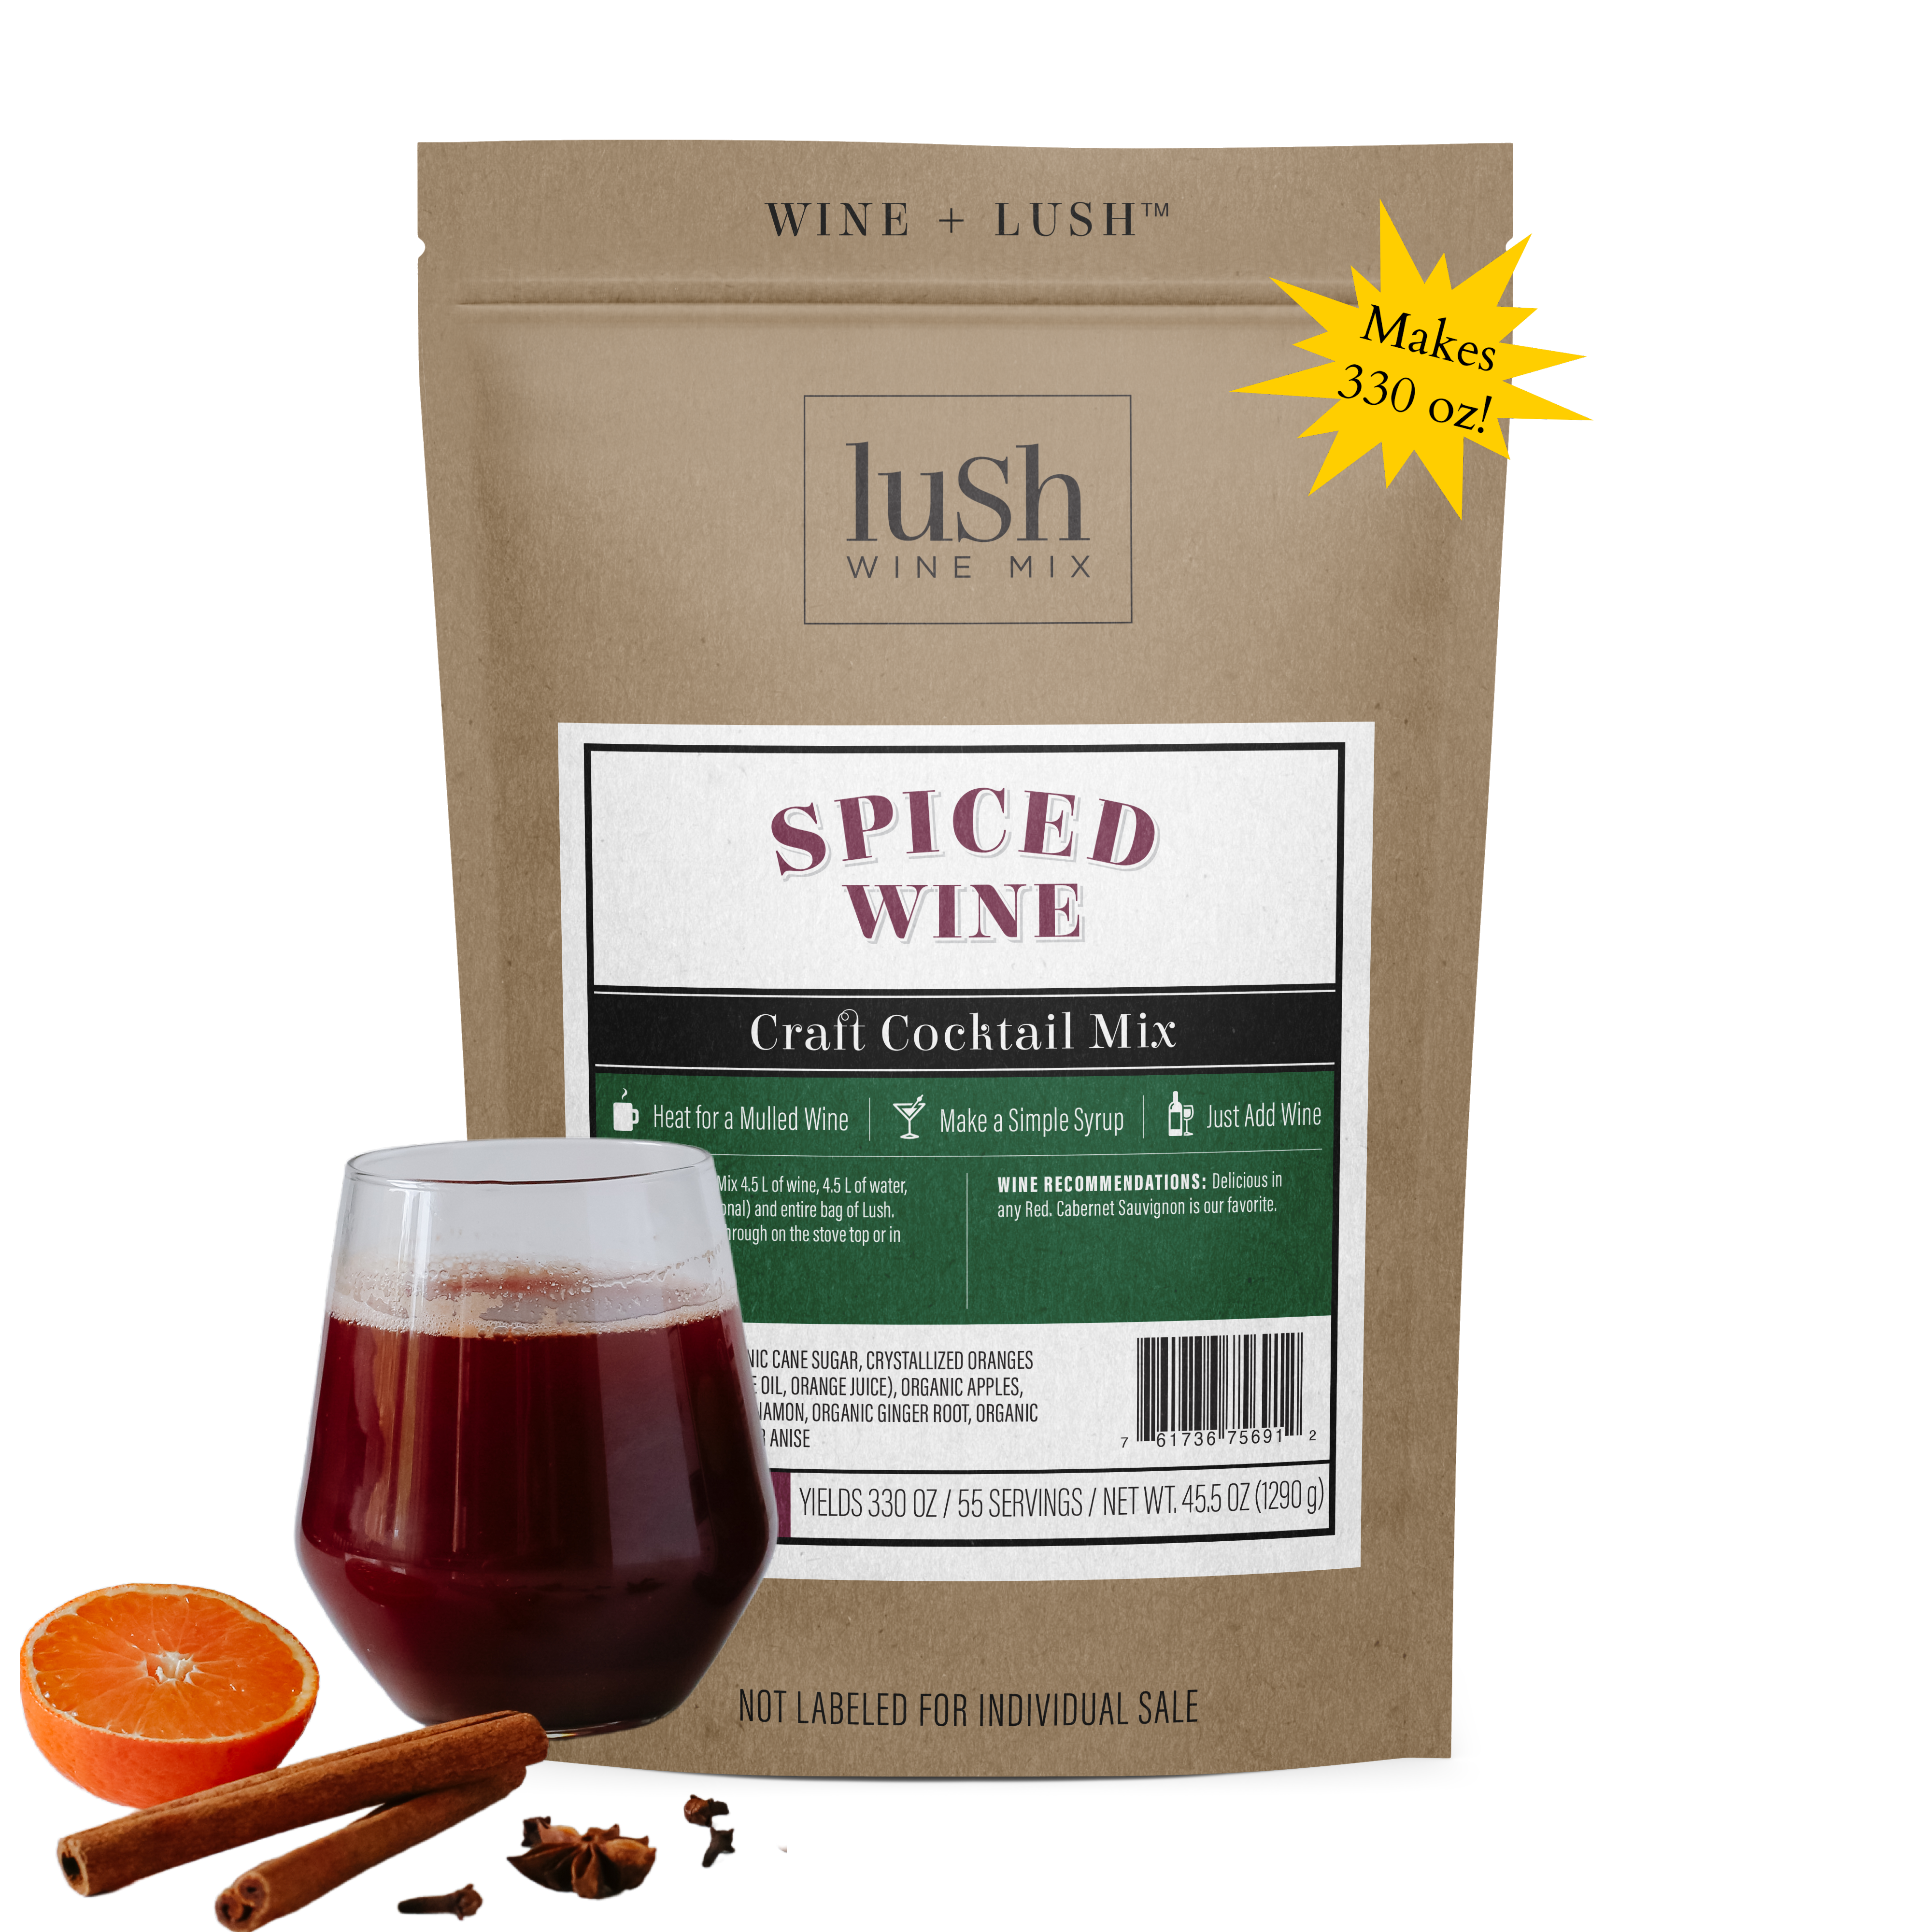 Spiced Wine Bulk Bag (Yields 330 oz.)